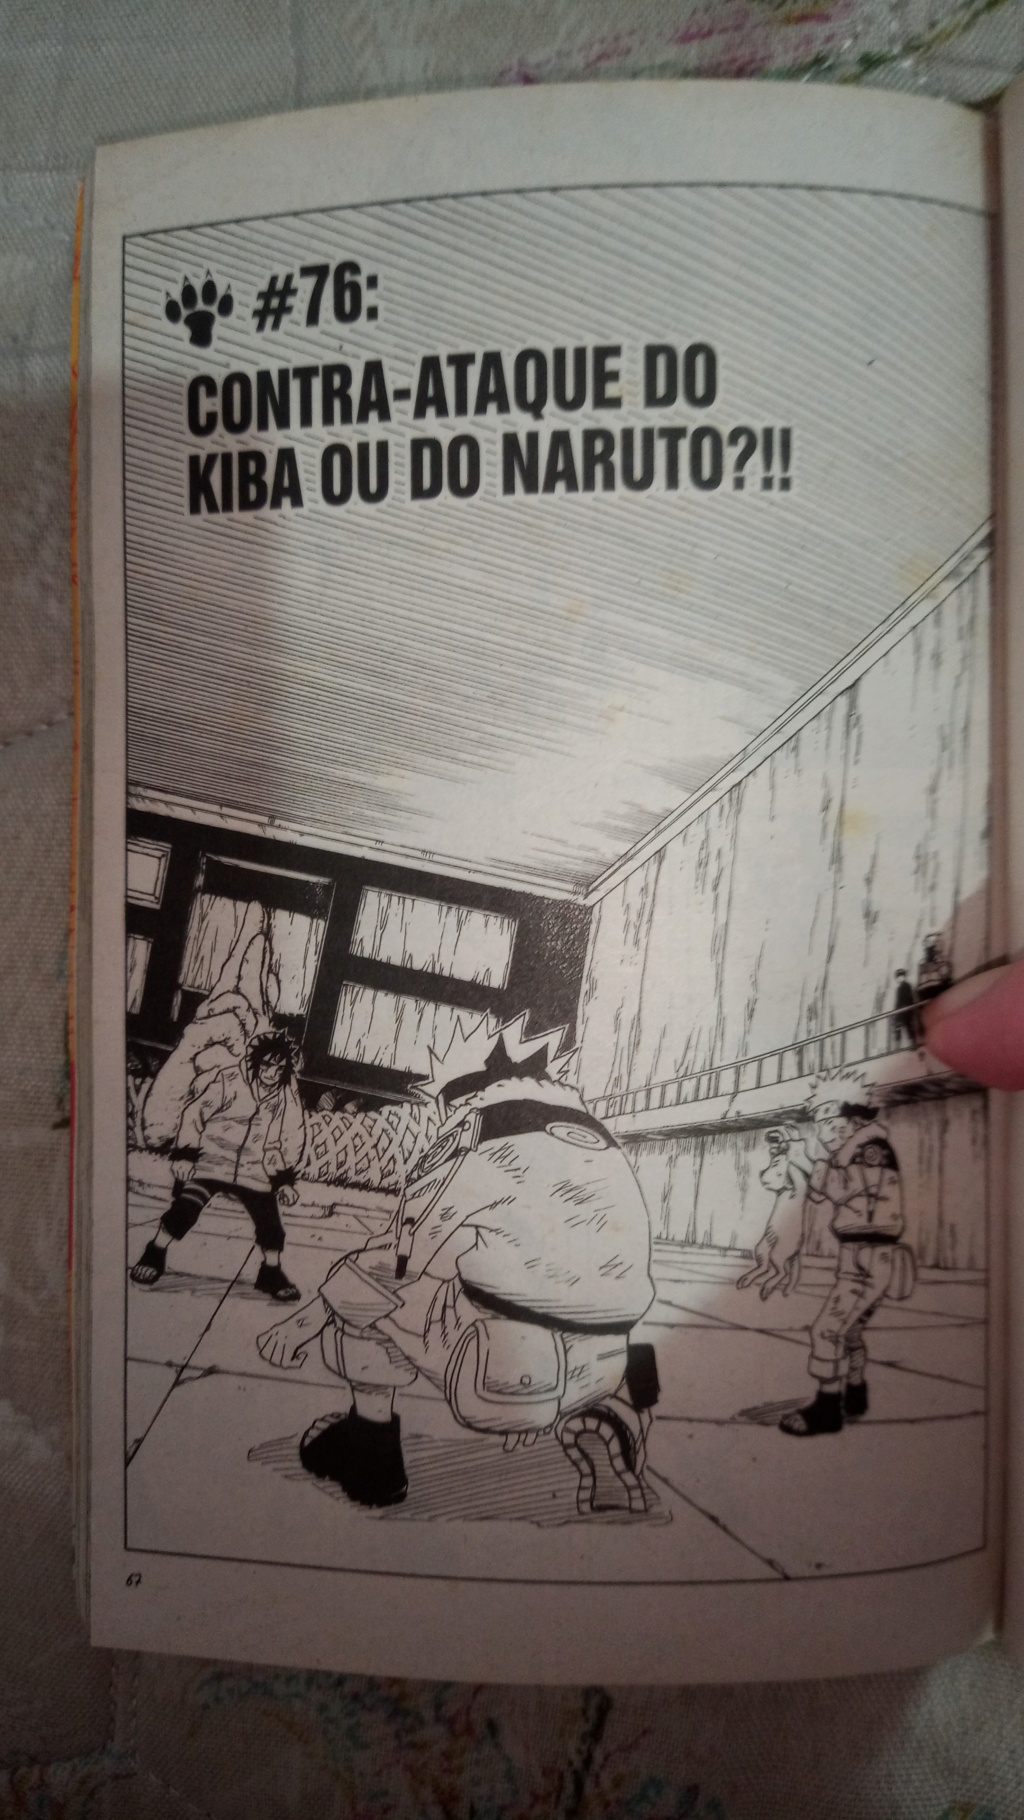 Naruto Capitulo 76 - Contra-ataque do Kiba ou do Naruto?!! 16922310